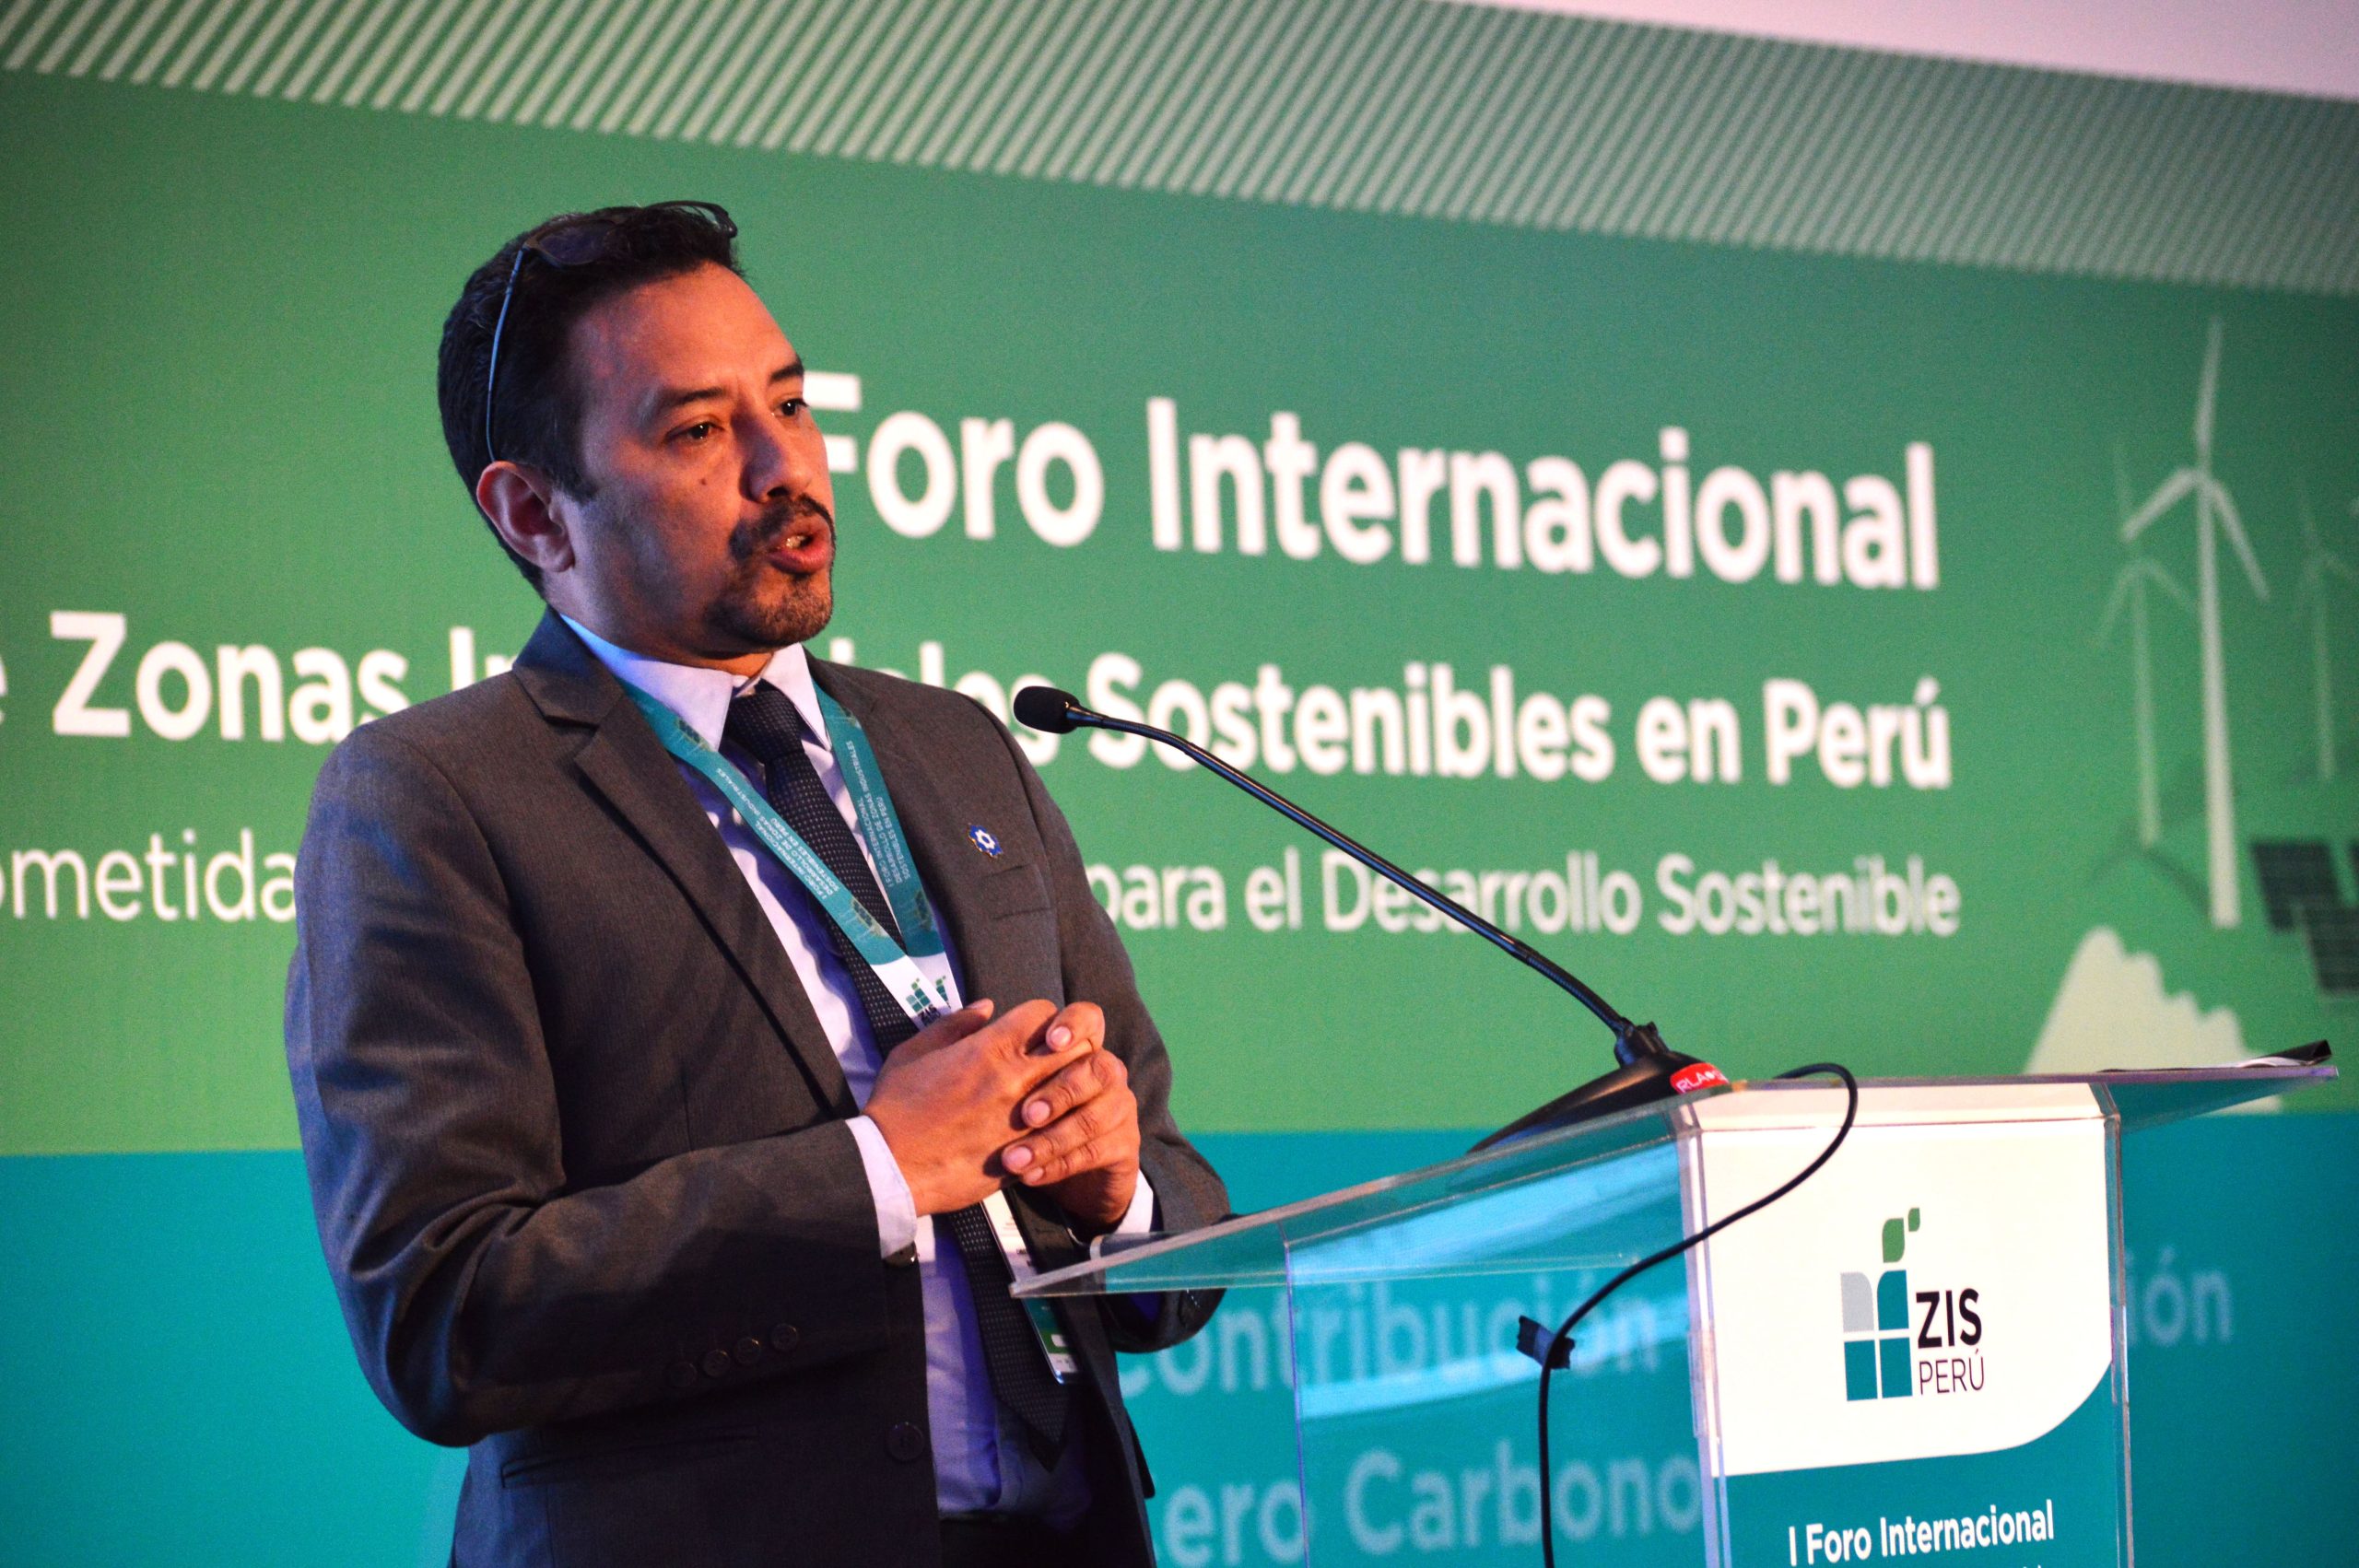 Christian Bueno, gerente de Administración y Finanzas de Profonanpe, explicó la función del fondo ambiental privado del Perú en el proyecto ZIS Perú.